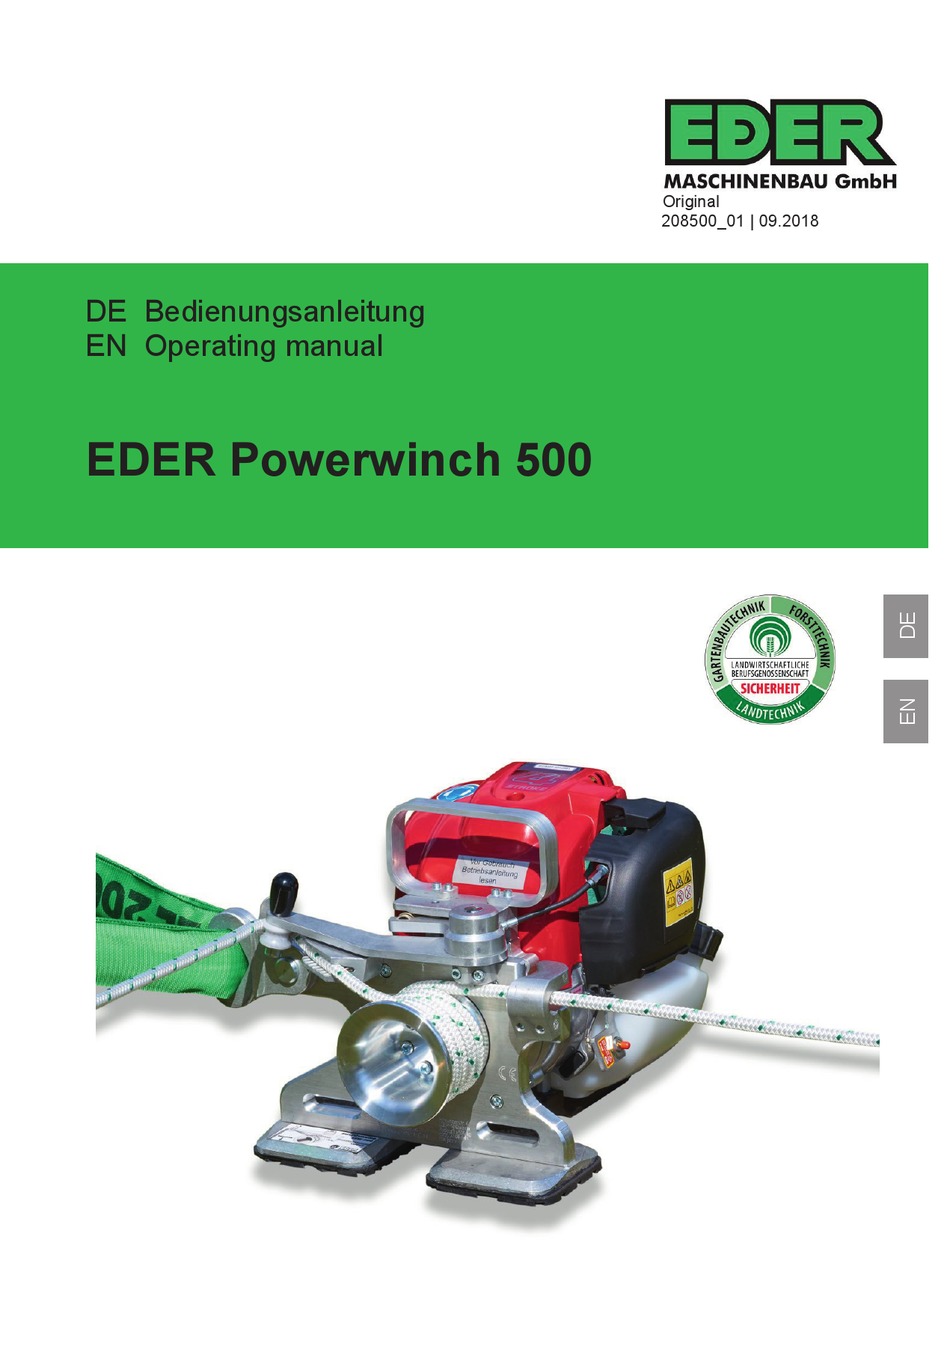 Zubehör - EDER Maschinenbau GmbH